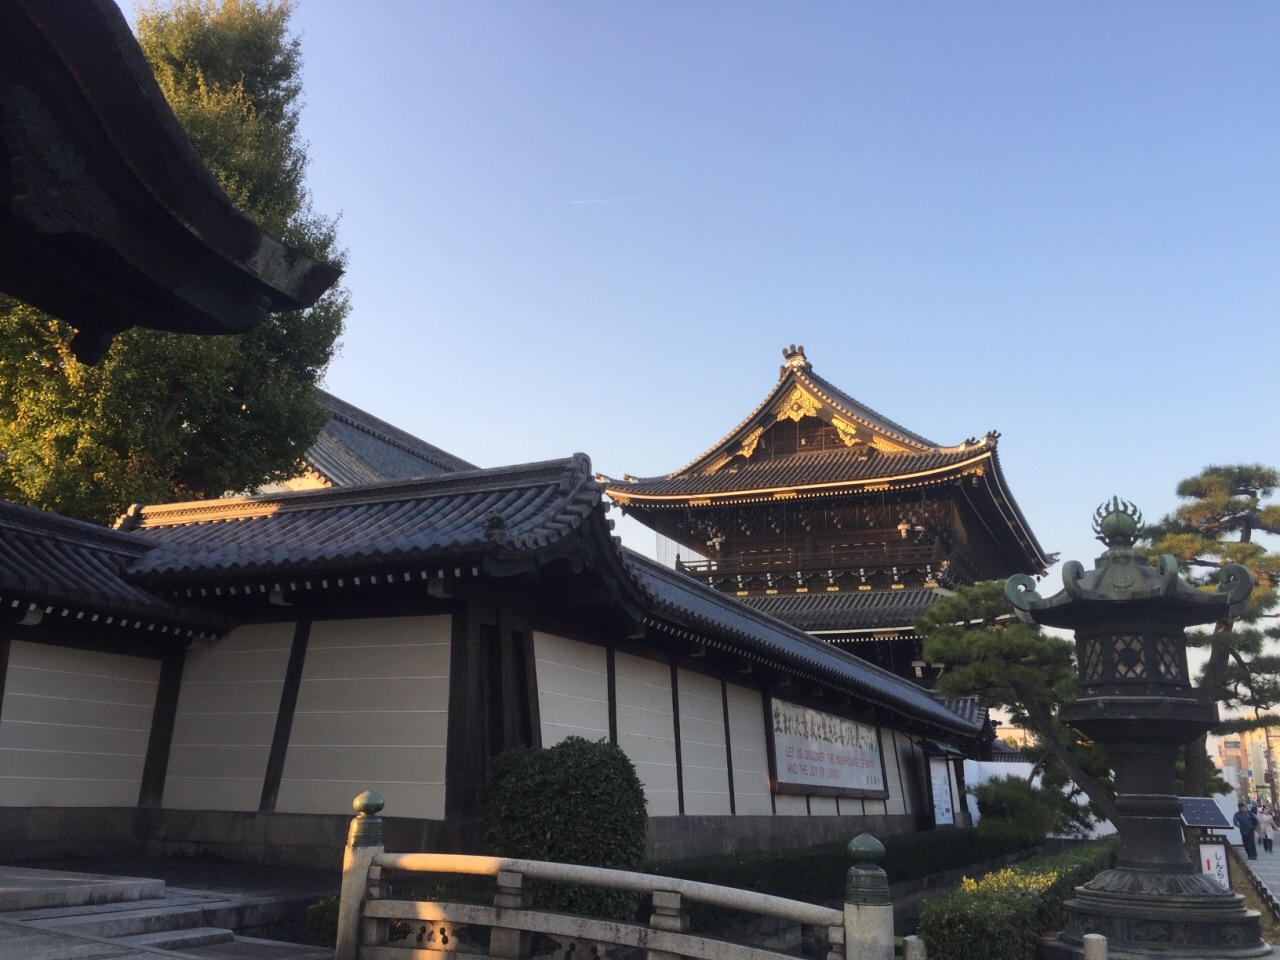 【携程攻略】京都本能寺景点,本能寺虽然不是热门景点,但是还是非常